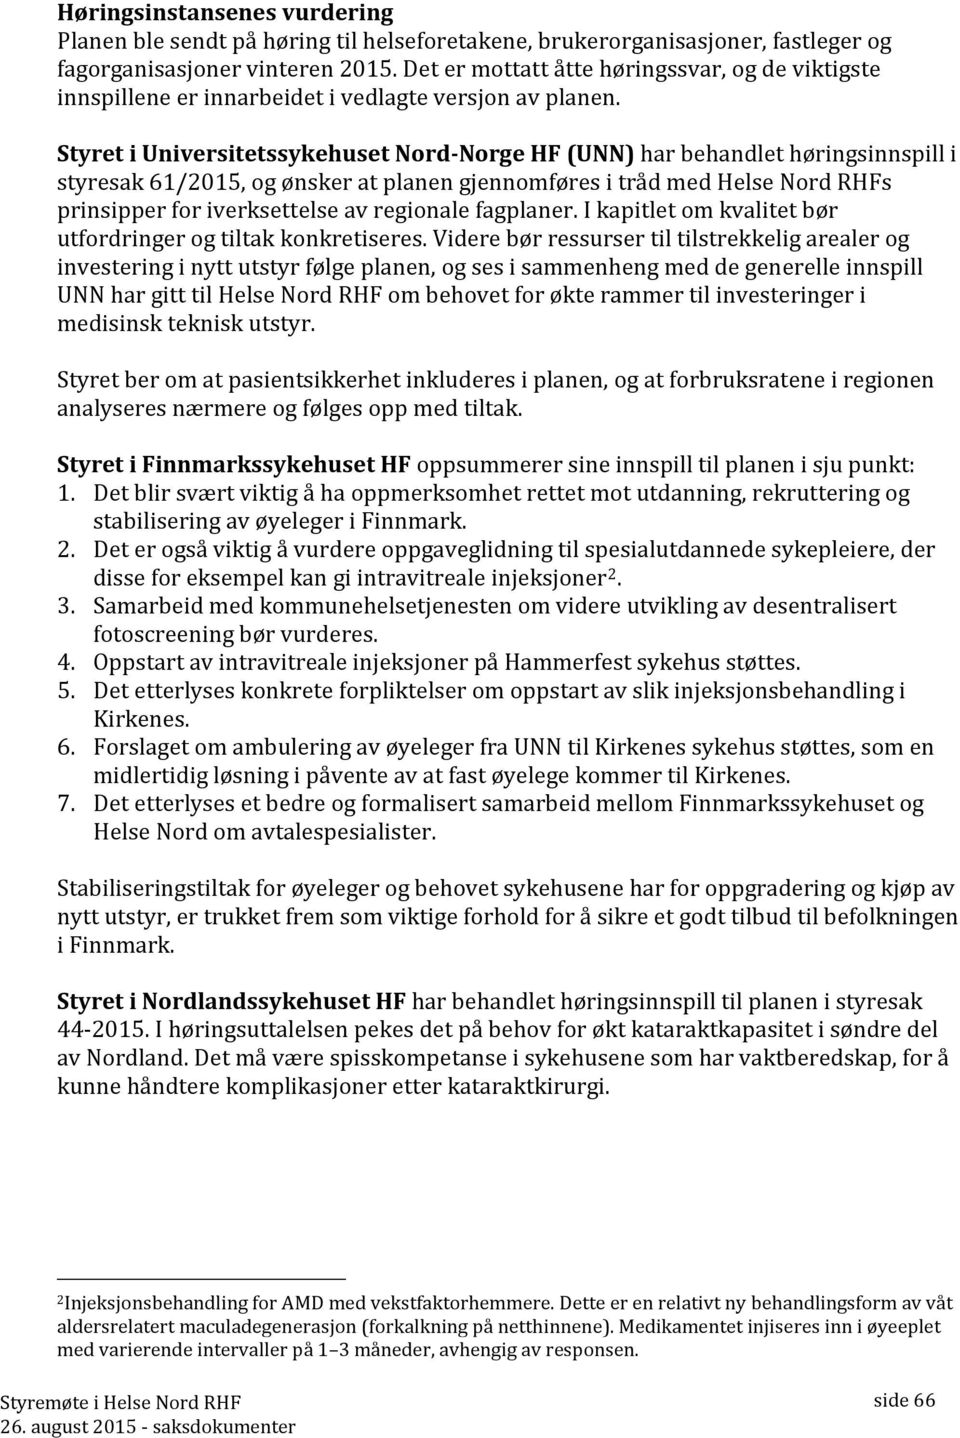 Styret i Universitetssykehuset Nord-Norge HF (UNN) har behandlet høringsinnspill i styresak 61/2015, og ønsker at planen gjennomføres i tråd med Helse Nord RHFs prinsipper for iverksettelse av